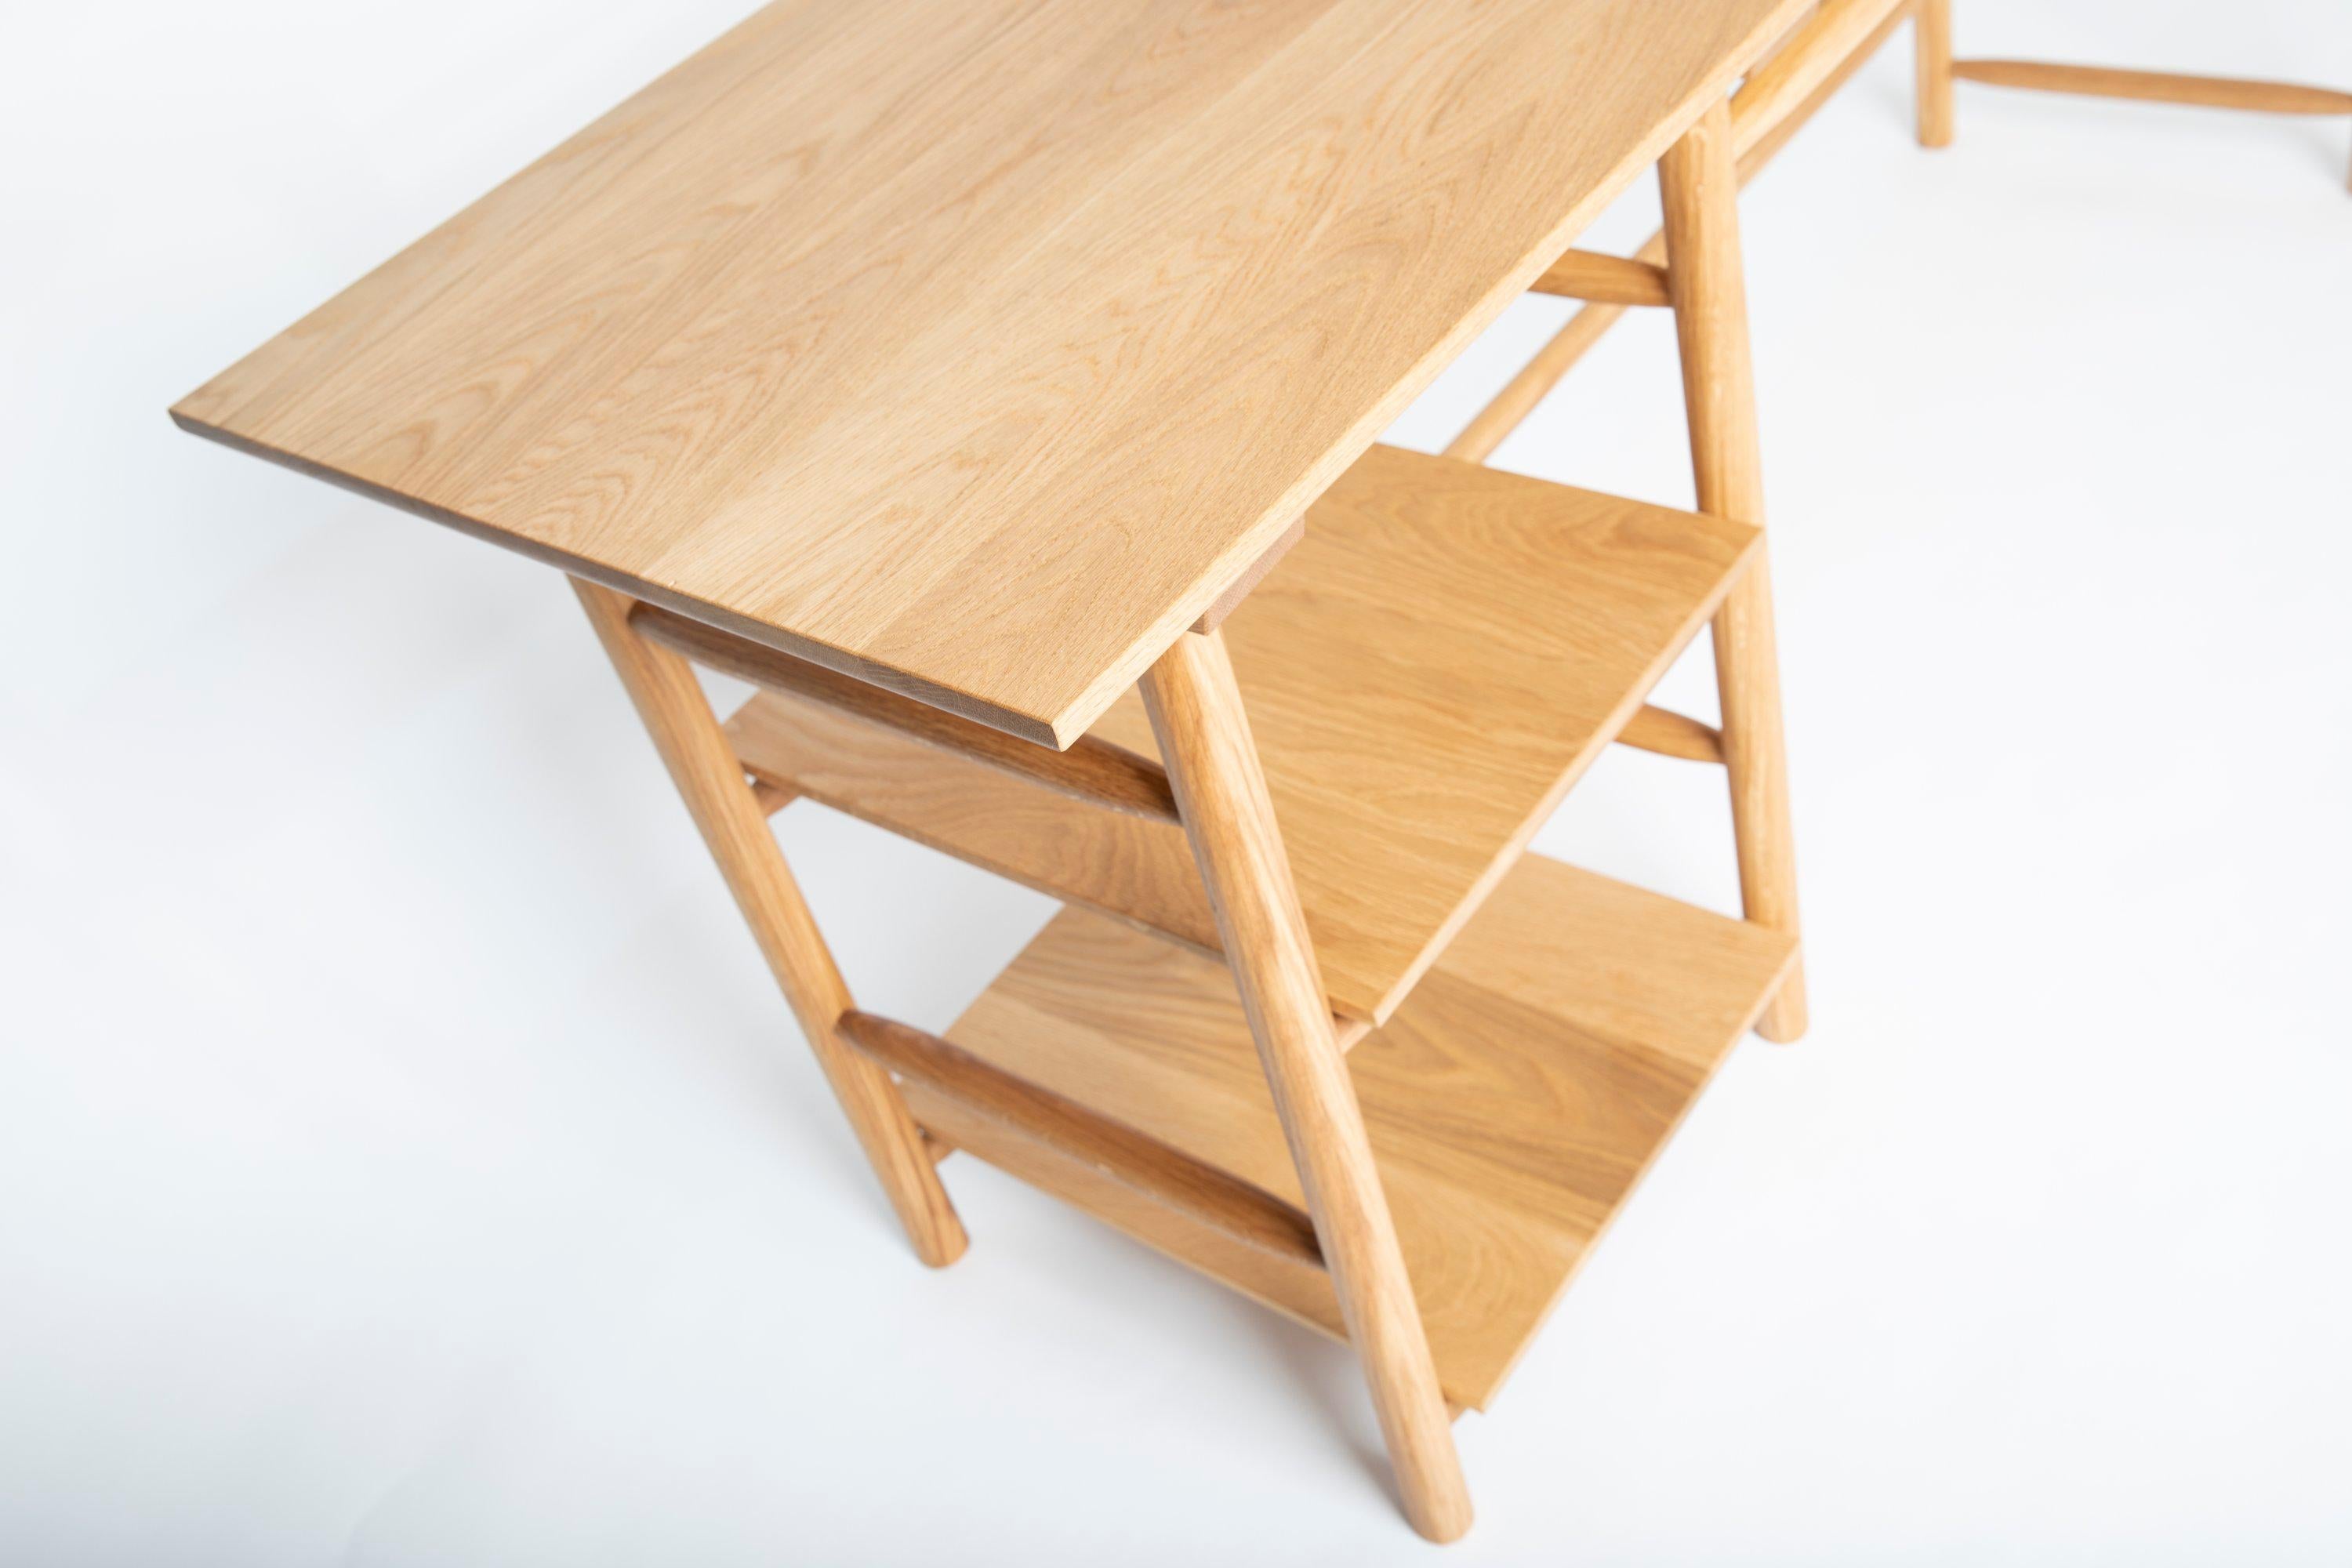 Präsentation eines handgefertigten Schreibtischs von Frank Buschmann  aus hochwertigem Eichenholz, veredelt mit einer exquisiten Öl-Wachs-Beschichtung für dauerhafte Schönheit. Jedes Element ist sorgfältig verarbeitet, wobei die Beine und Bänder mit